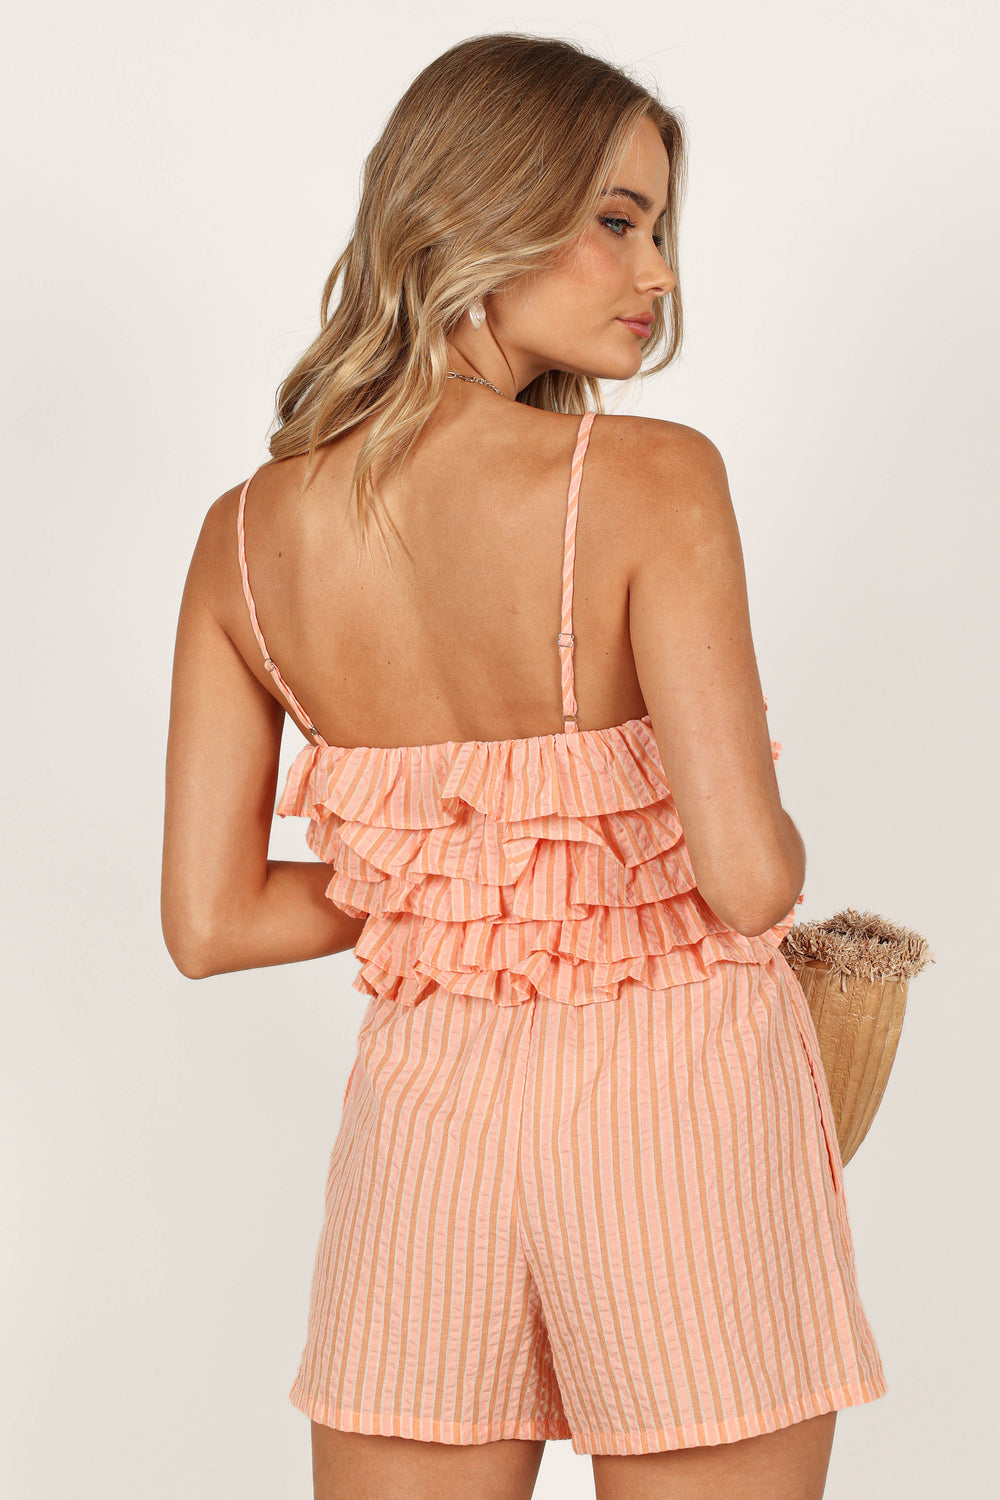 BOTTOMS @Kellie Shorts - Orange/Pink Stripe (waiting on bulk)